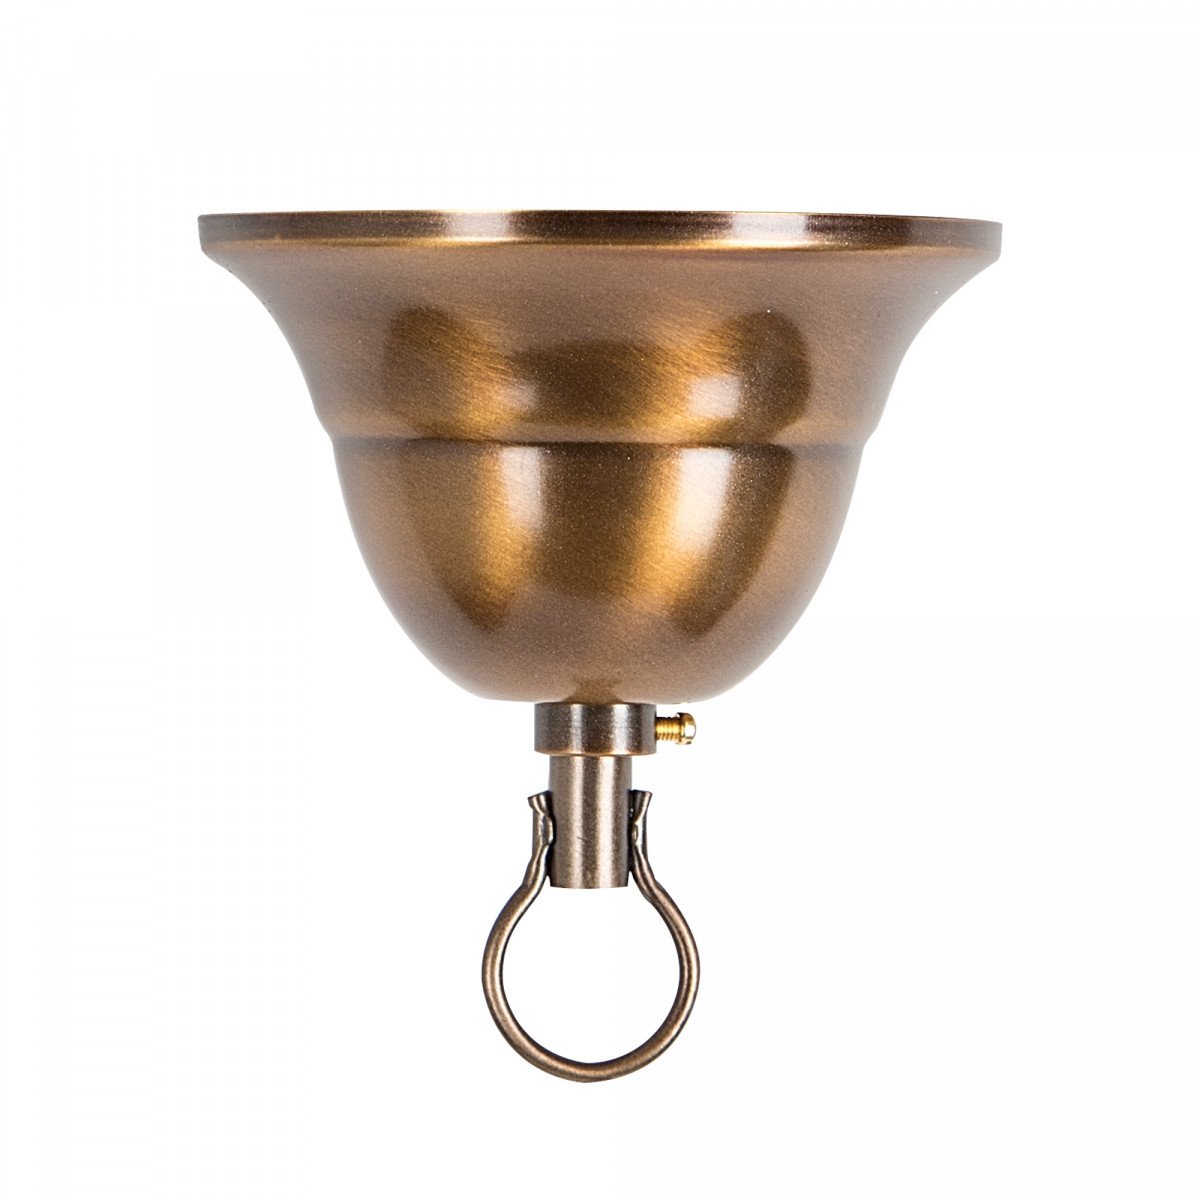 Suspension sur chaîne Ampère Bronze/Cuivre (1197) de KS Lighting, robuste et industriel